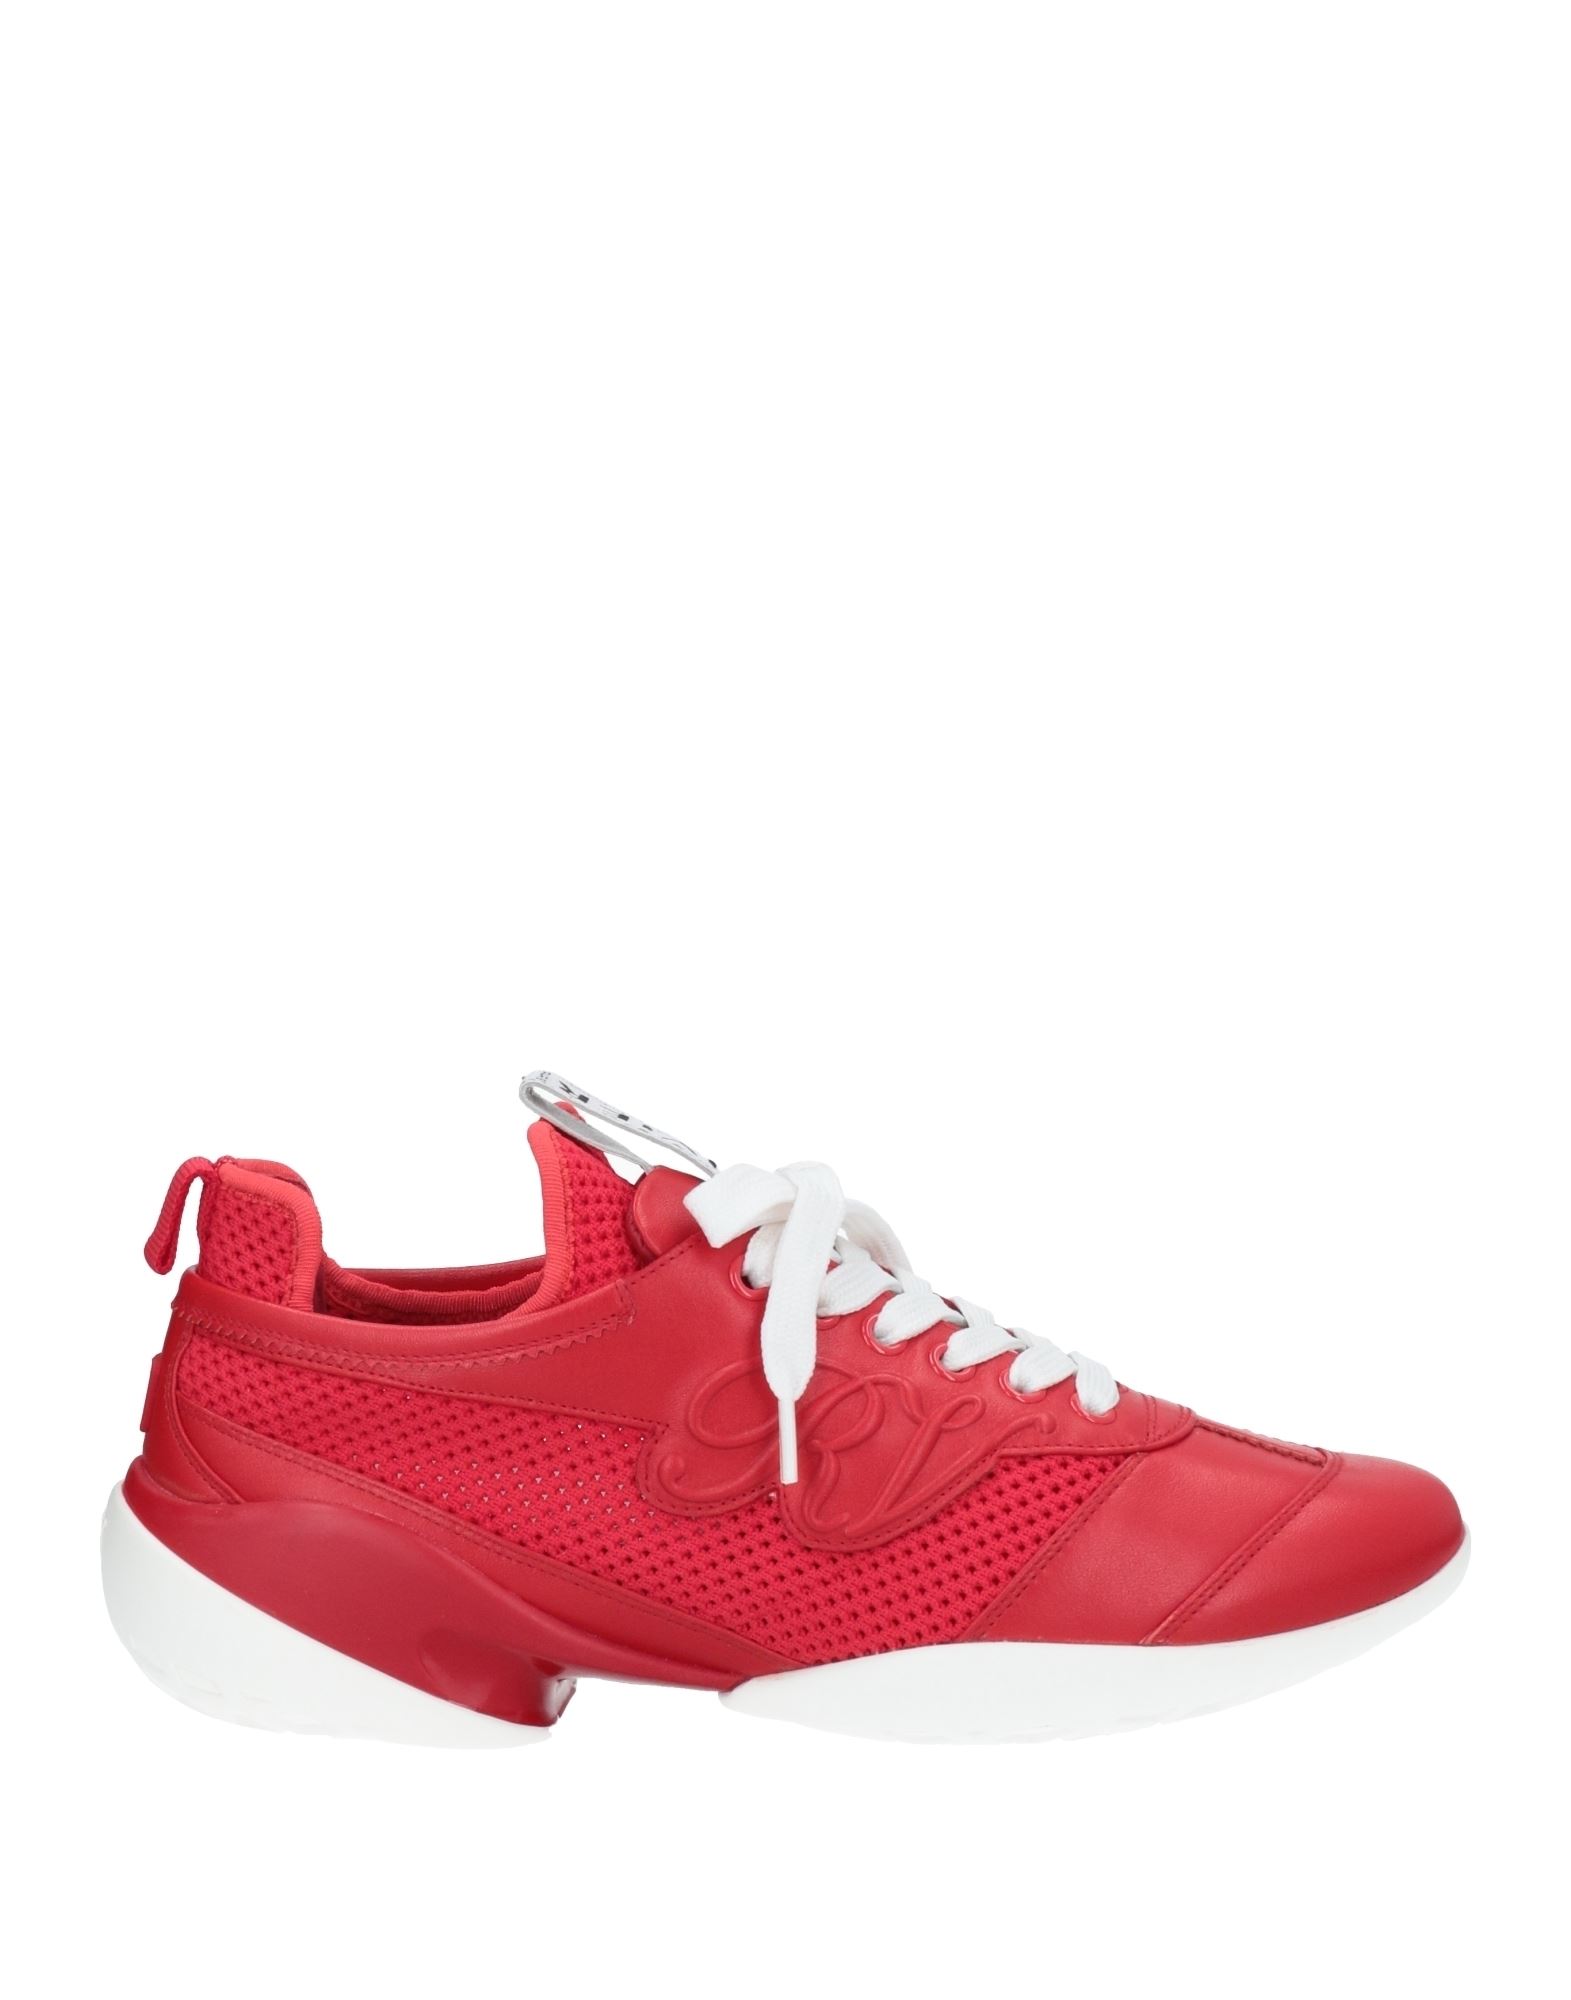 Roger Vivier Sneakers In Red